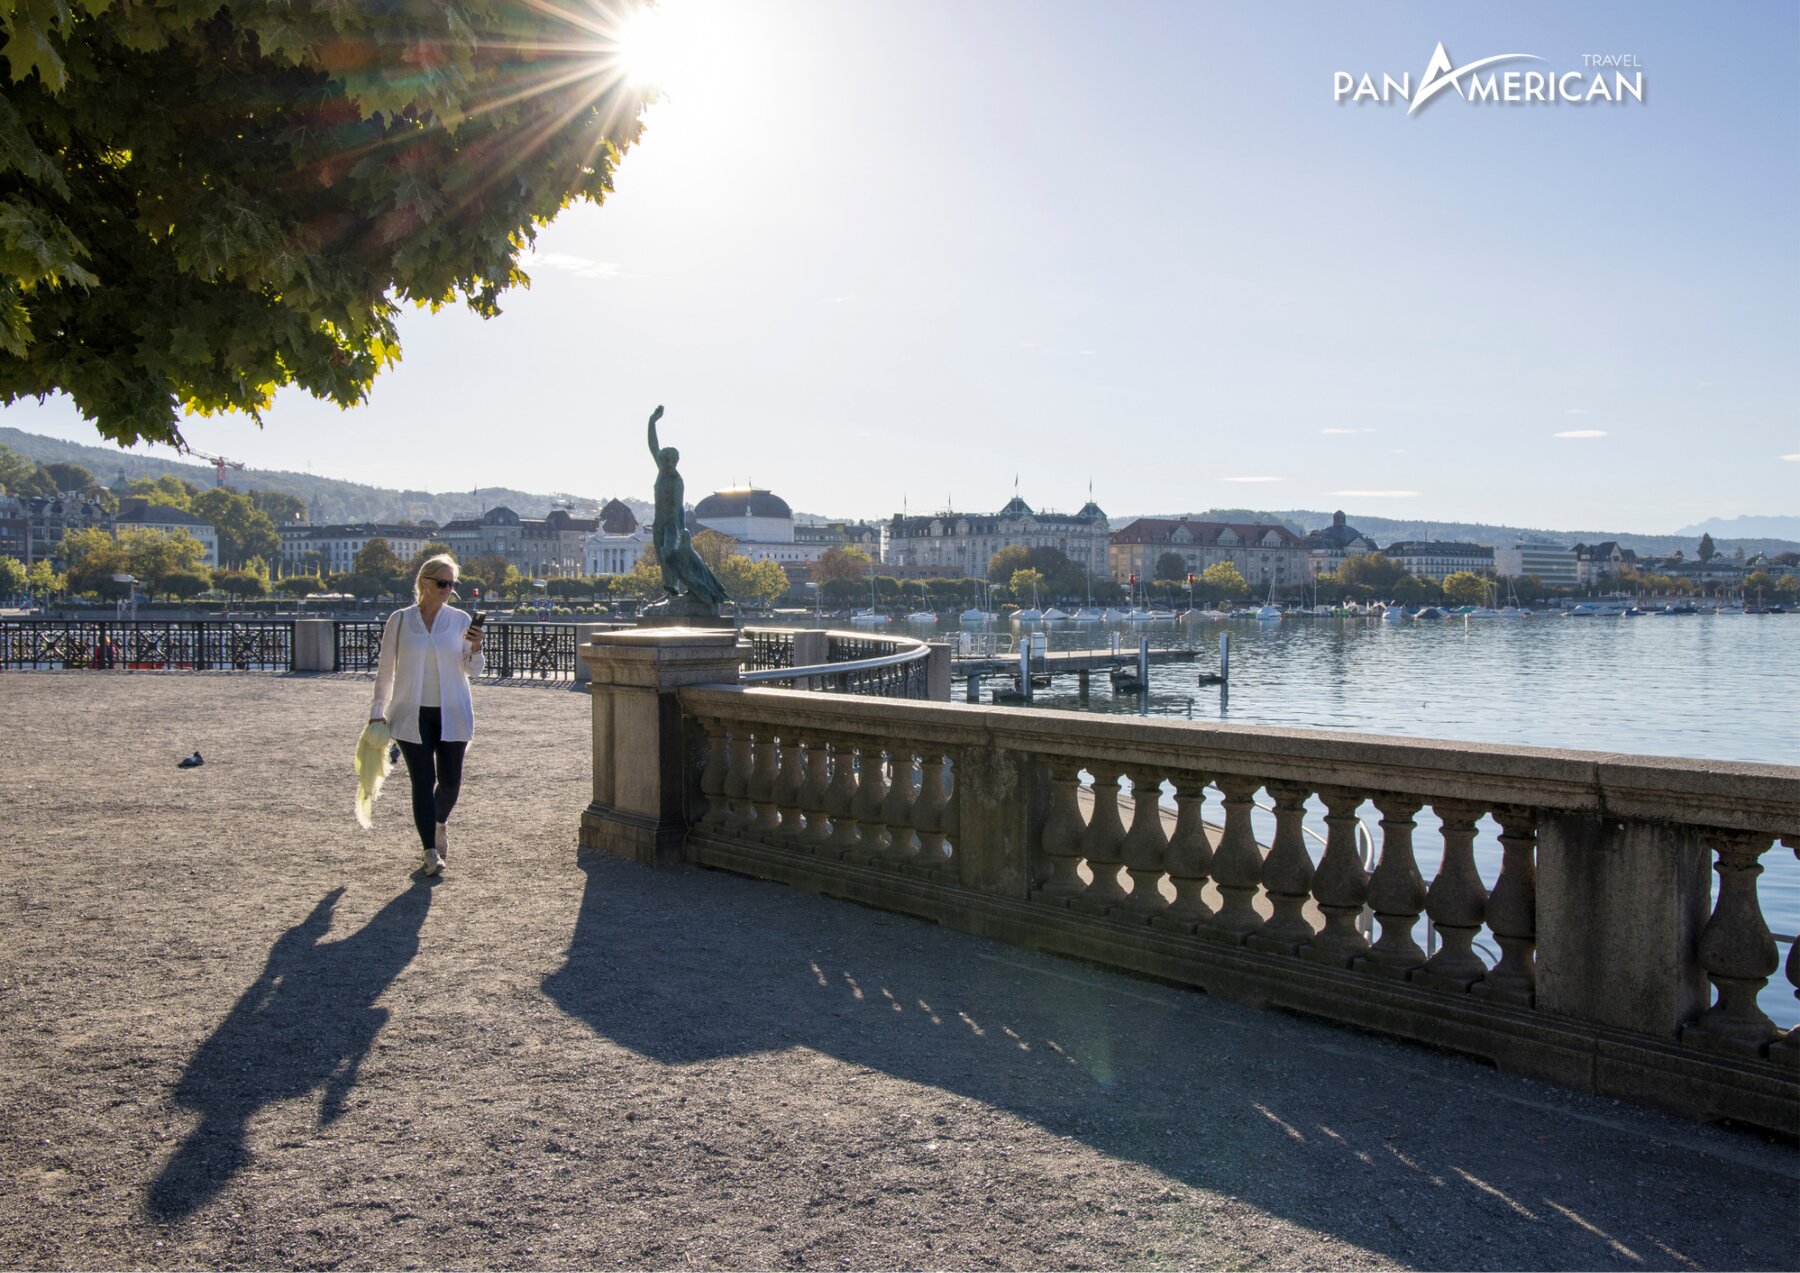 Tản bộ bên hồ Zurich thơ mộng